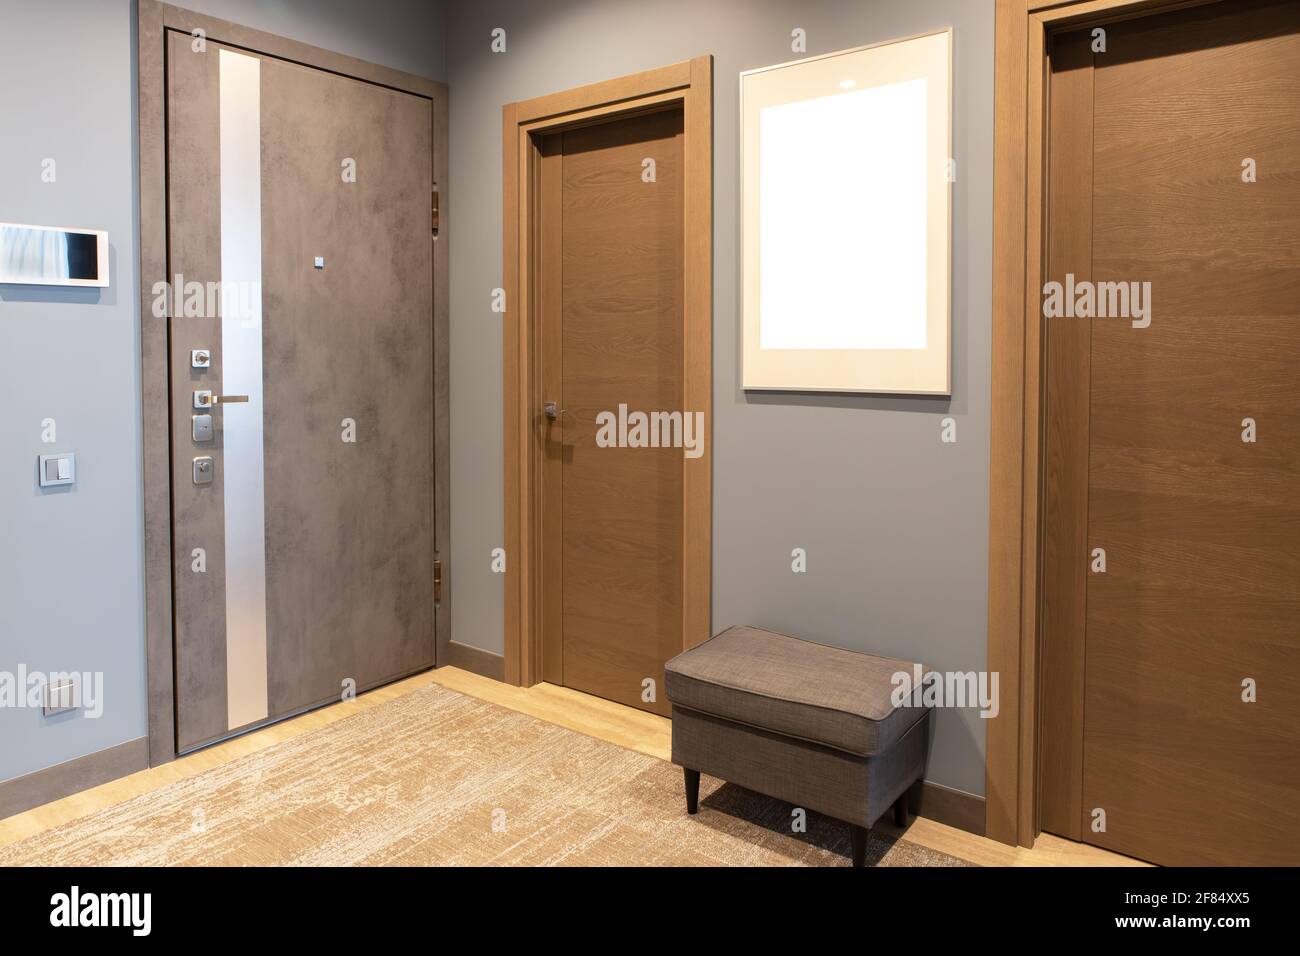 Corridoio d'ingresso moderno in sfumature neutre di marrone e grigio. A parete c'è cornice fotografica con mockup, porta anteriore con interfono. Moda concettuale Foto Stock